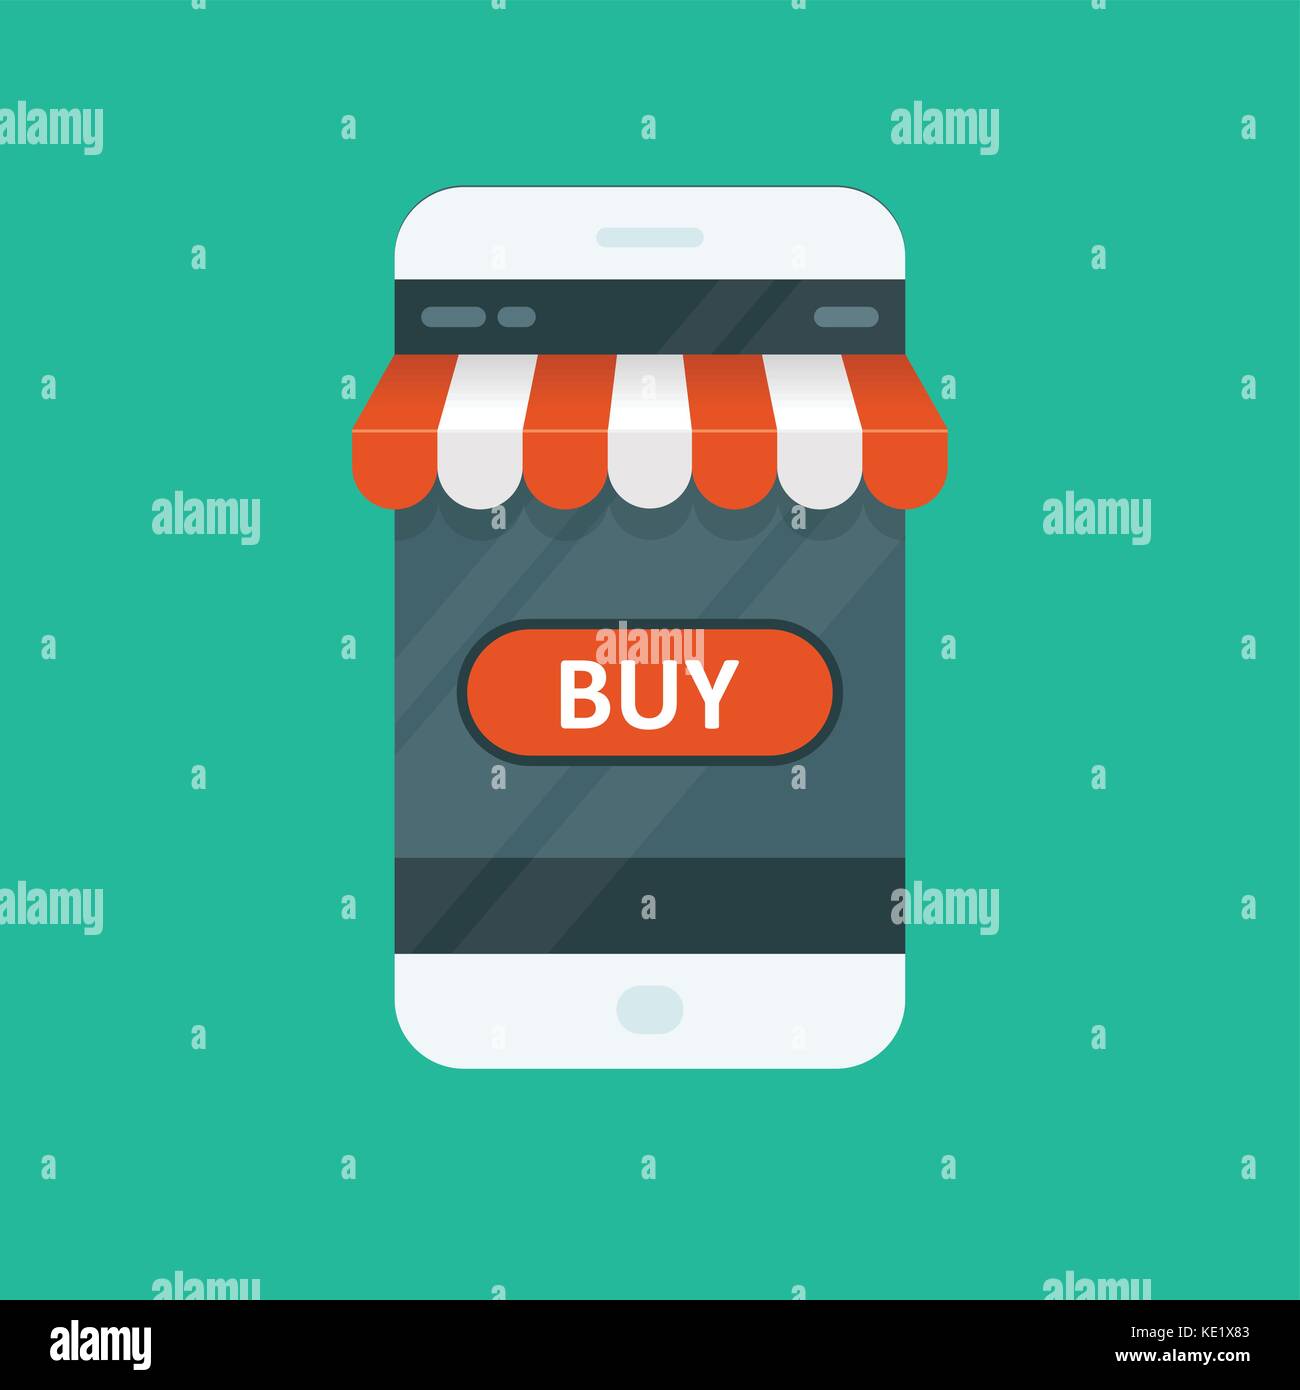 Shopping online - e-commerce app for smartphone Stock Vector